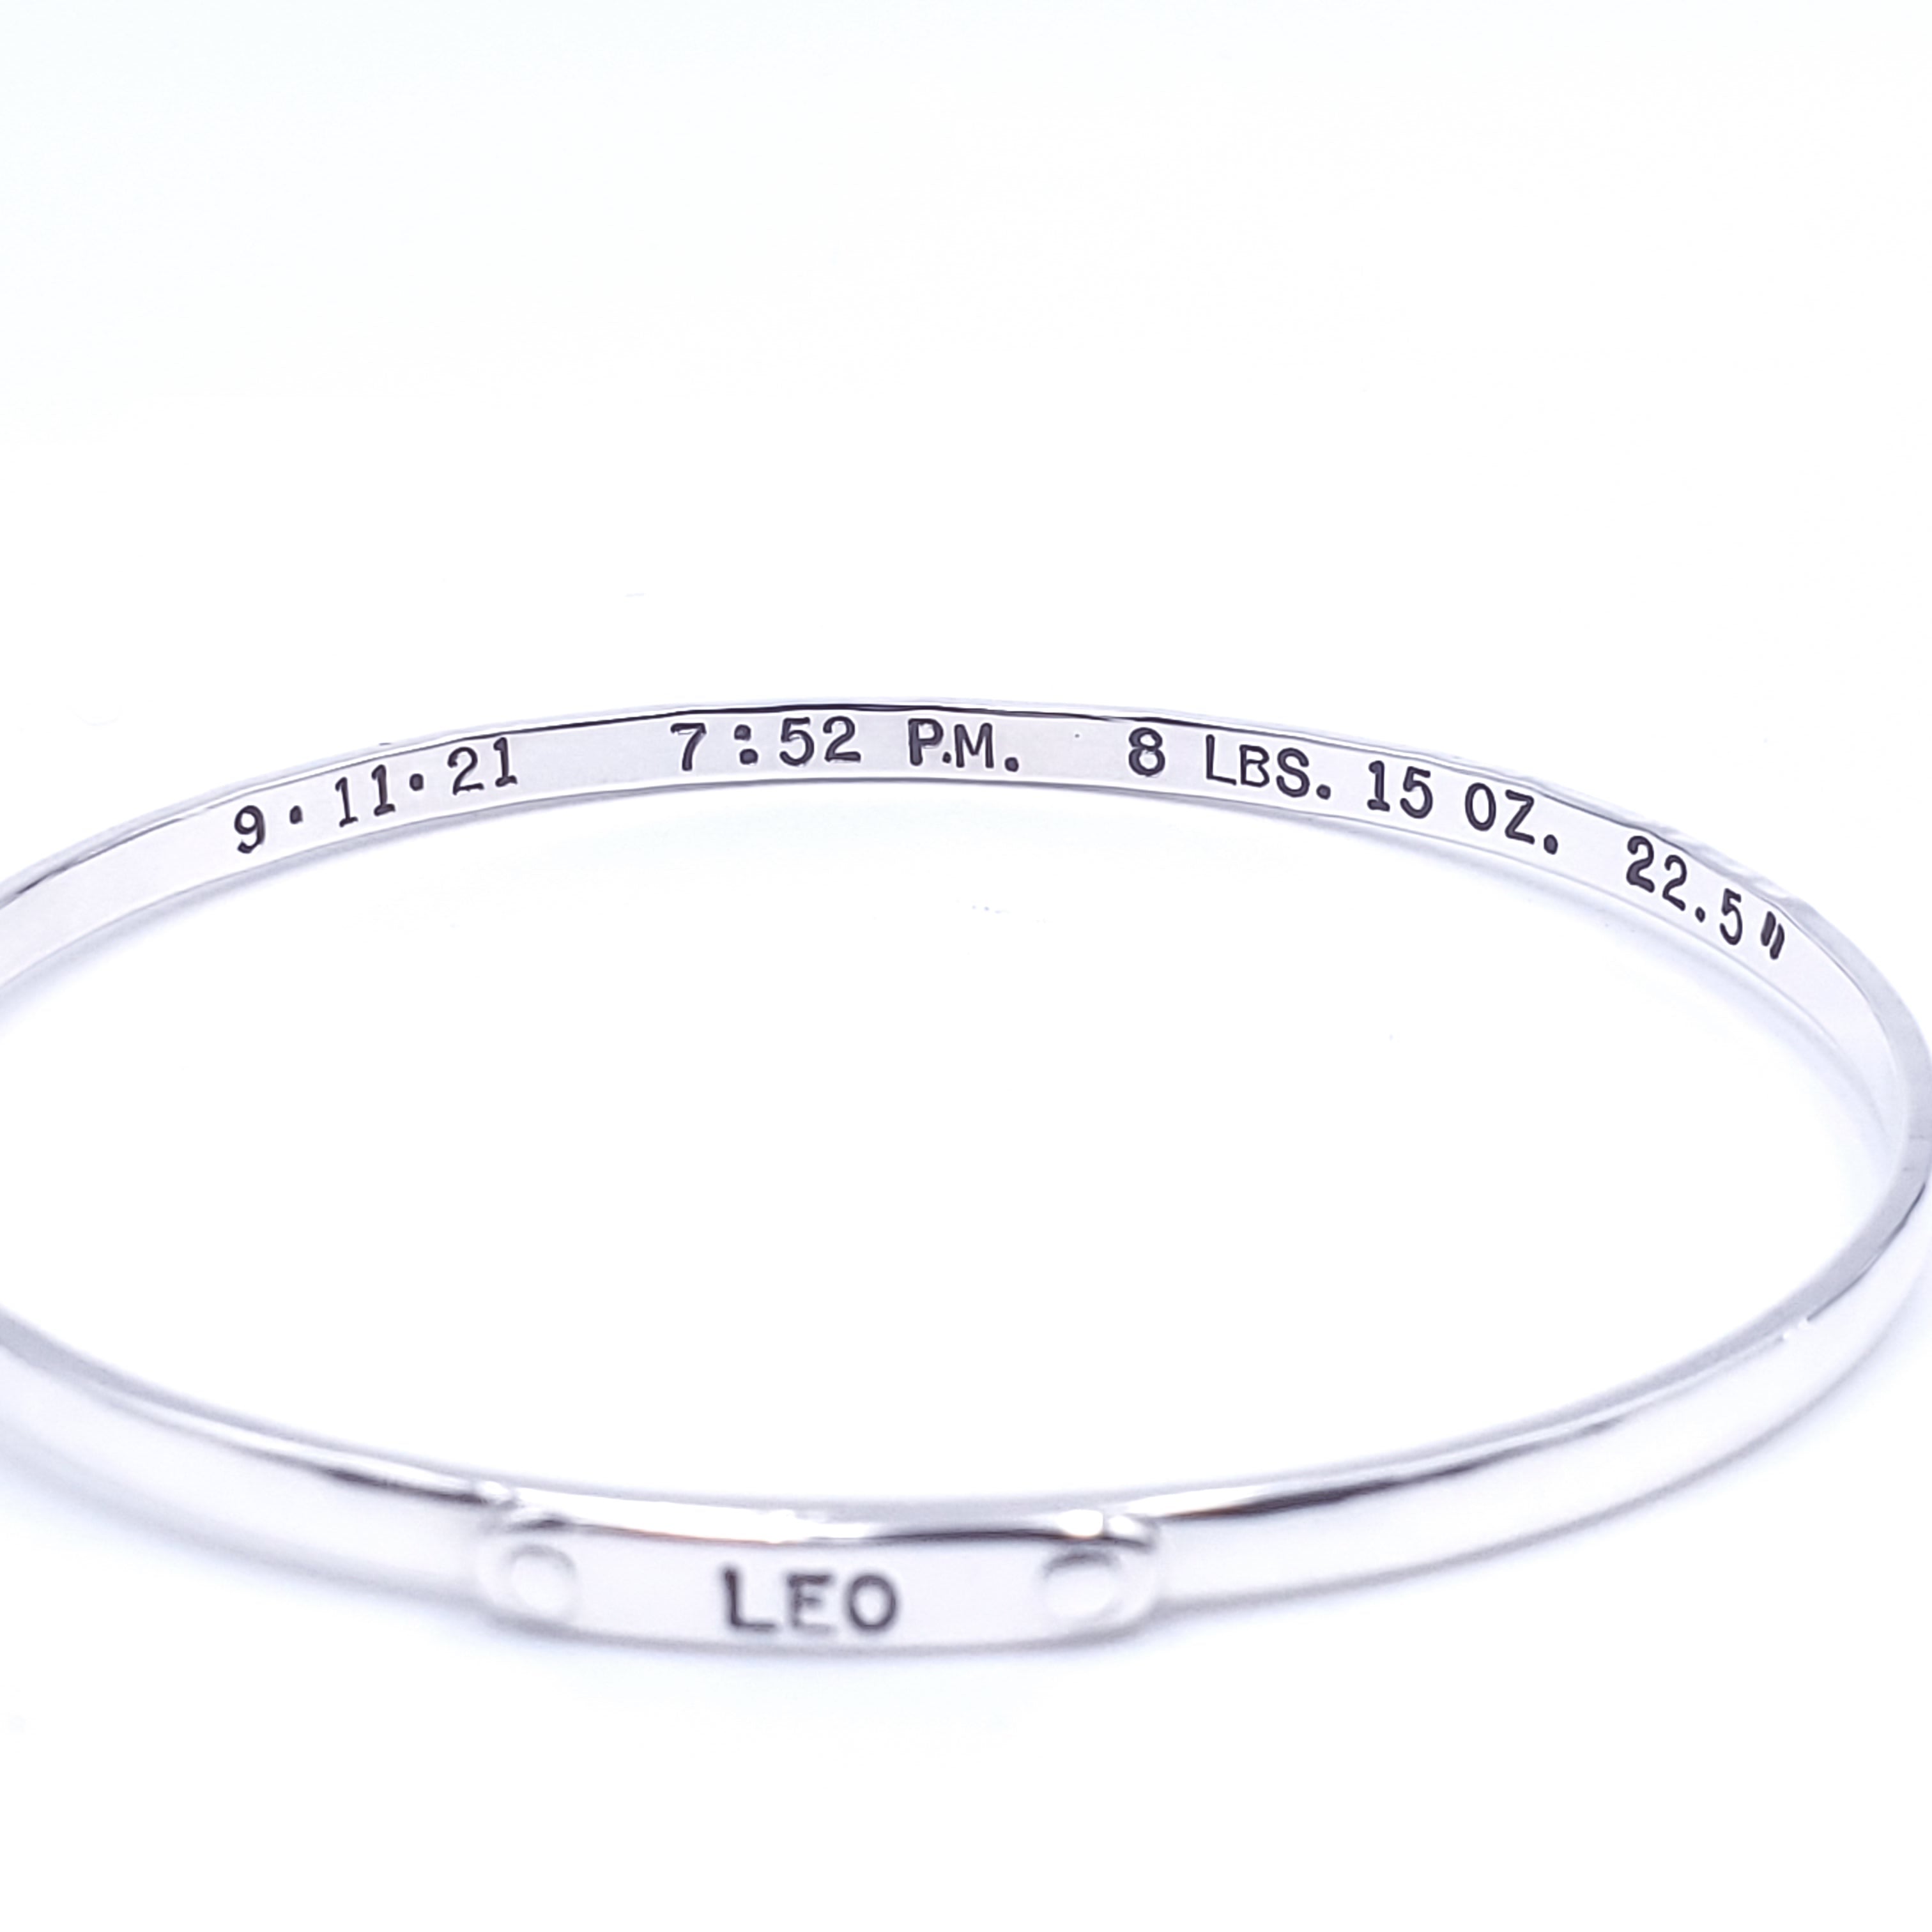 Leo custom name silver bracelet